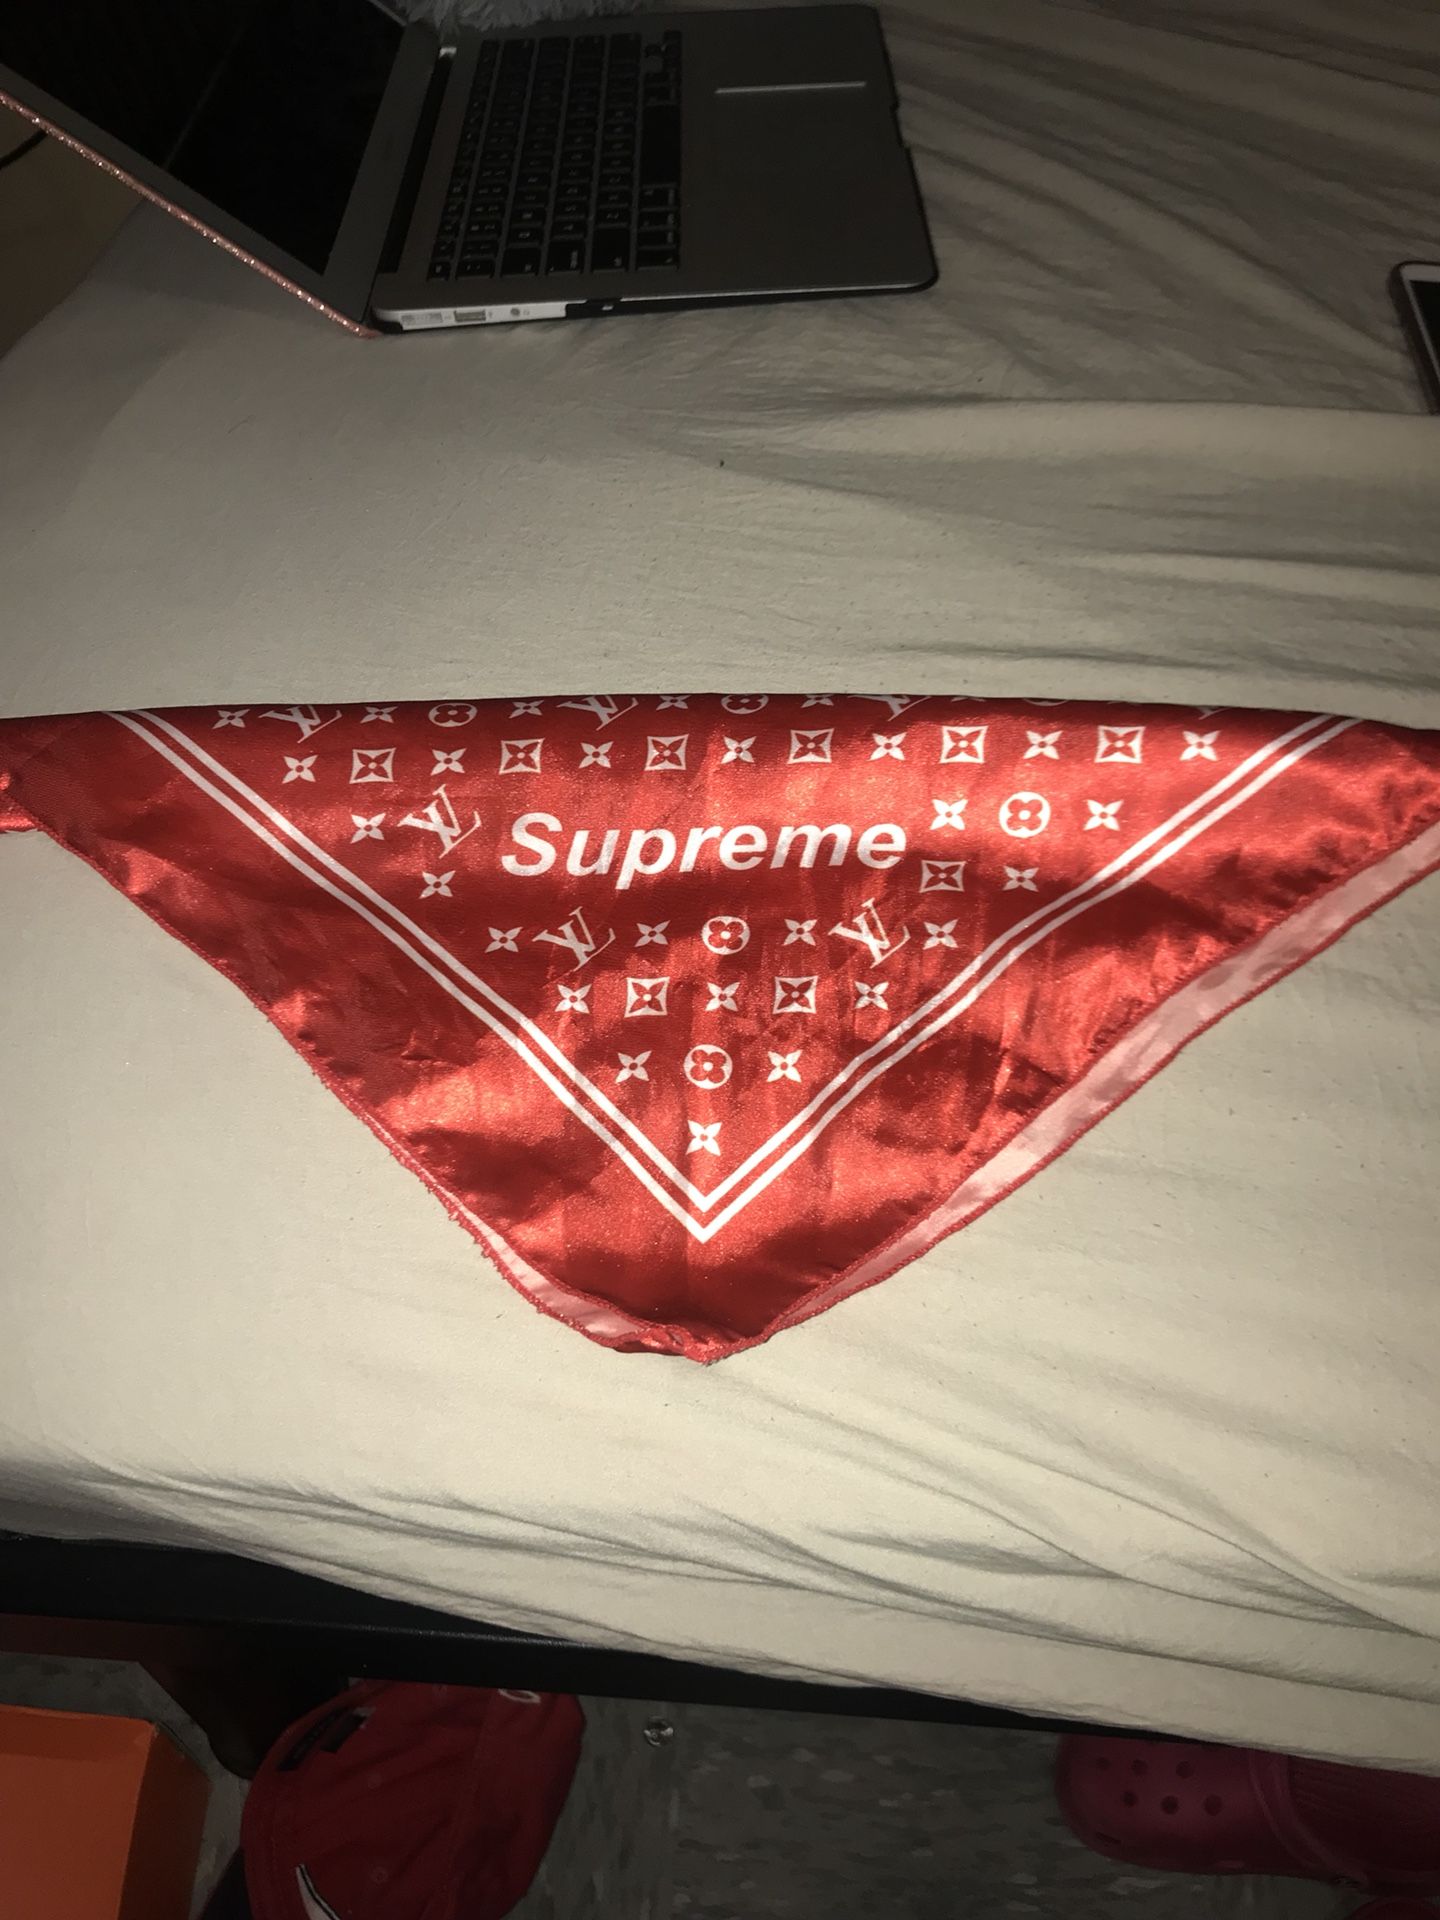 Supreme/Louis Vuitton mashup bandana